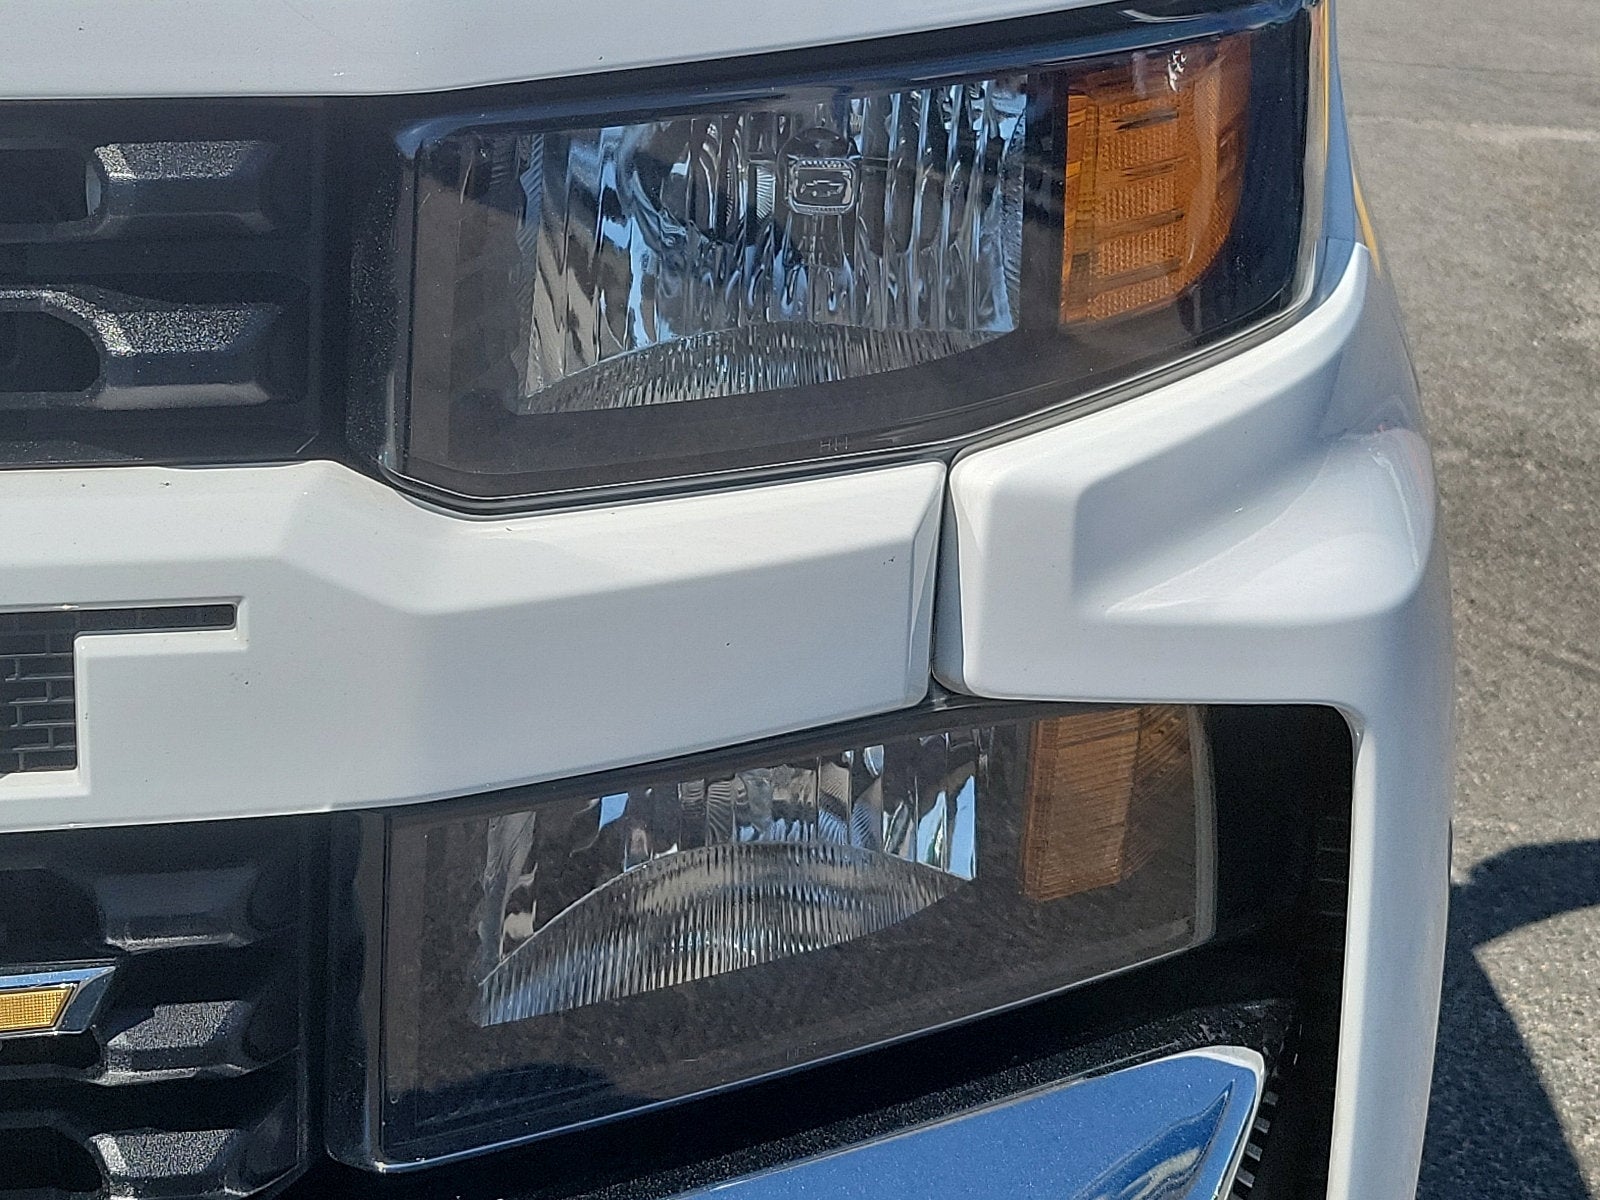 2019 Chevrolet SILVERADO 150